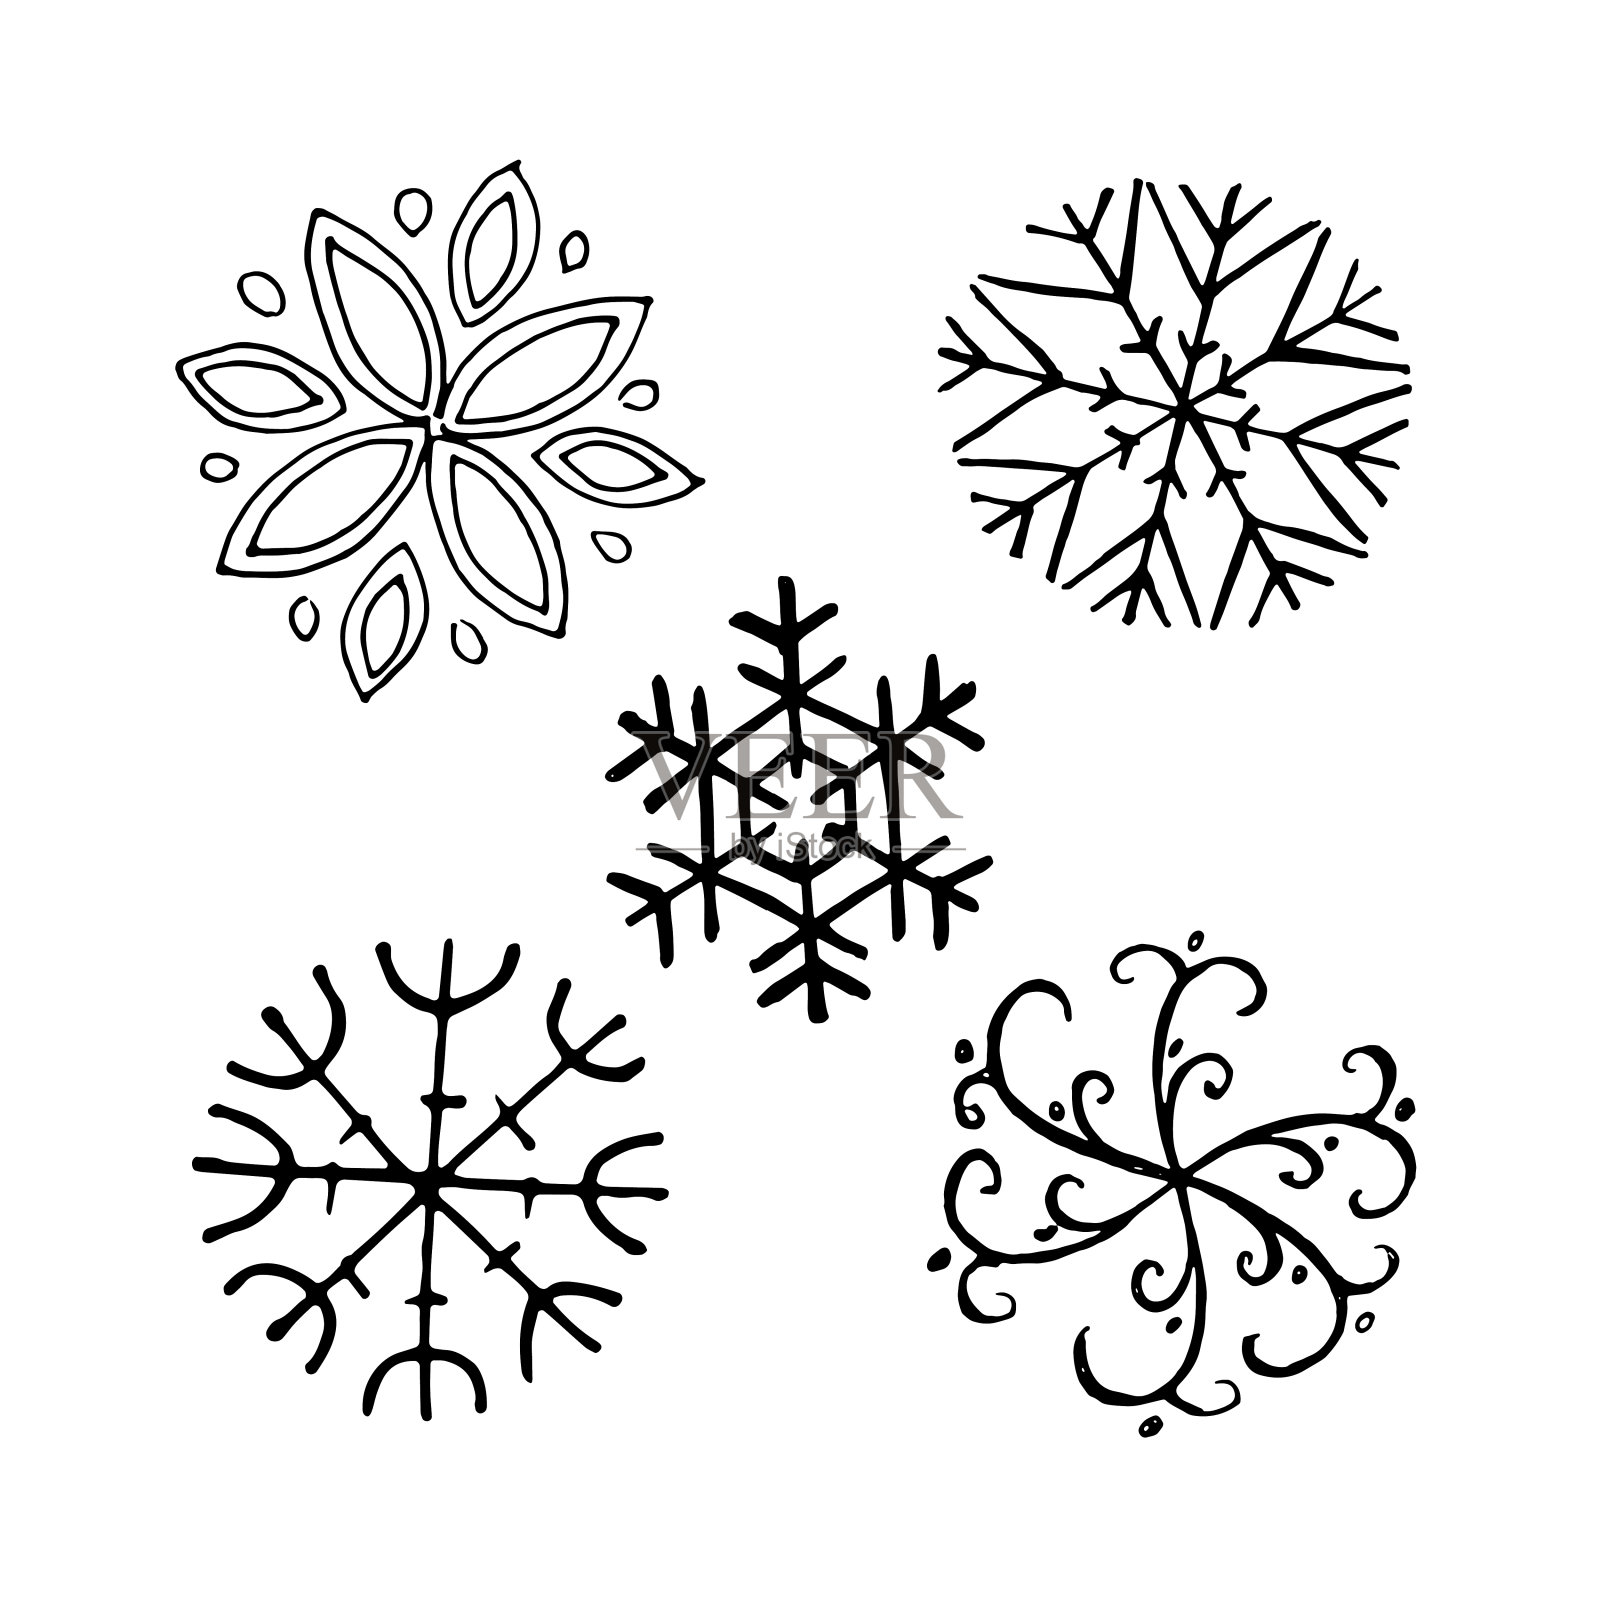 绘画插图矢量剪影抽象方形画幅问候俄罗斯水晶冰霜雪雪花装饰符号